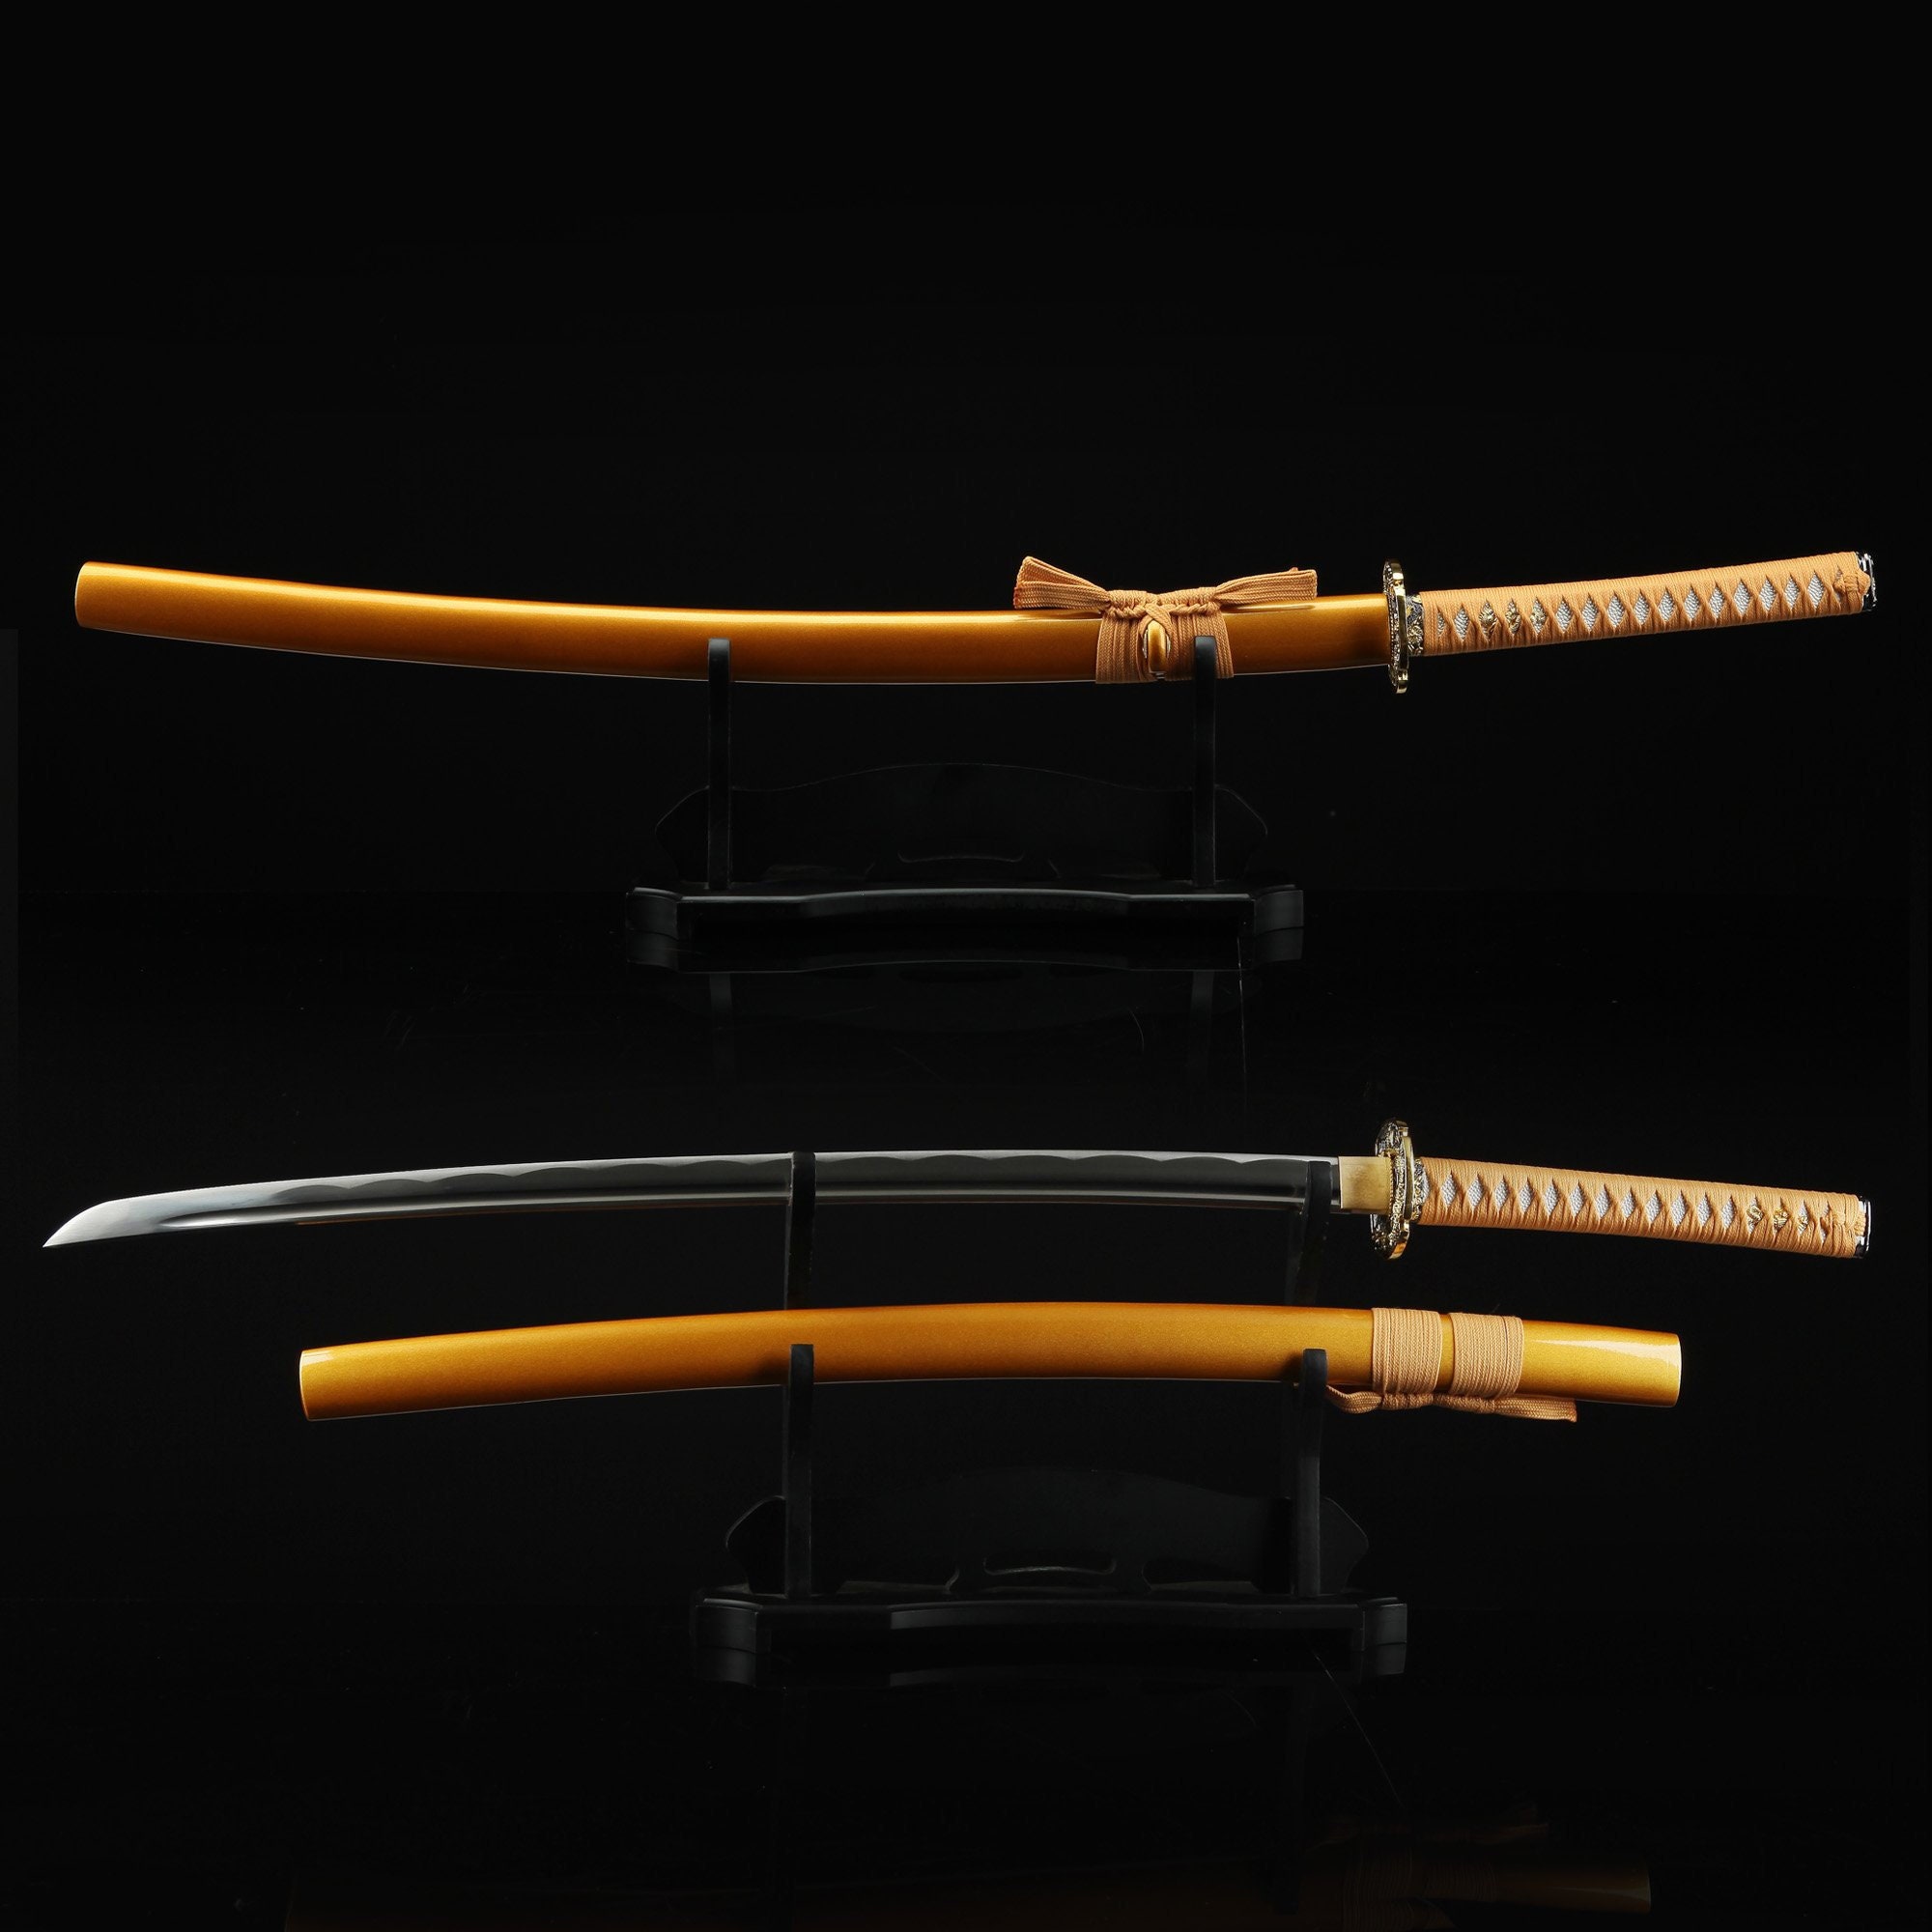 Mano Forjada Acero al carbono T1095 El último Samurai Katana espada japonesa muy afilada 